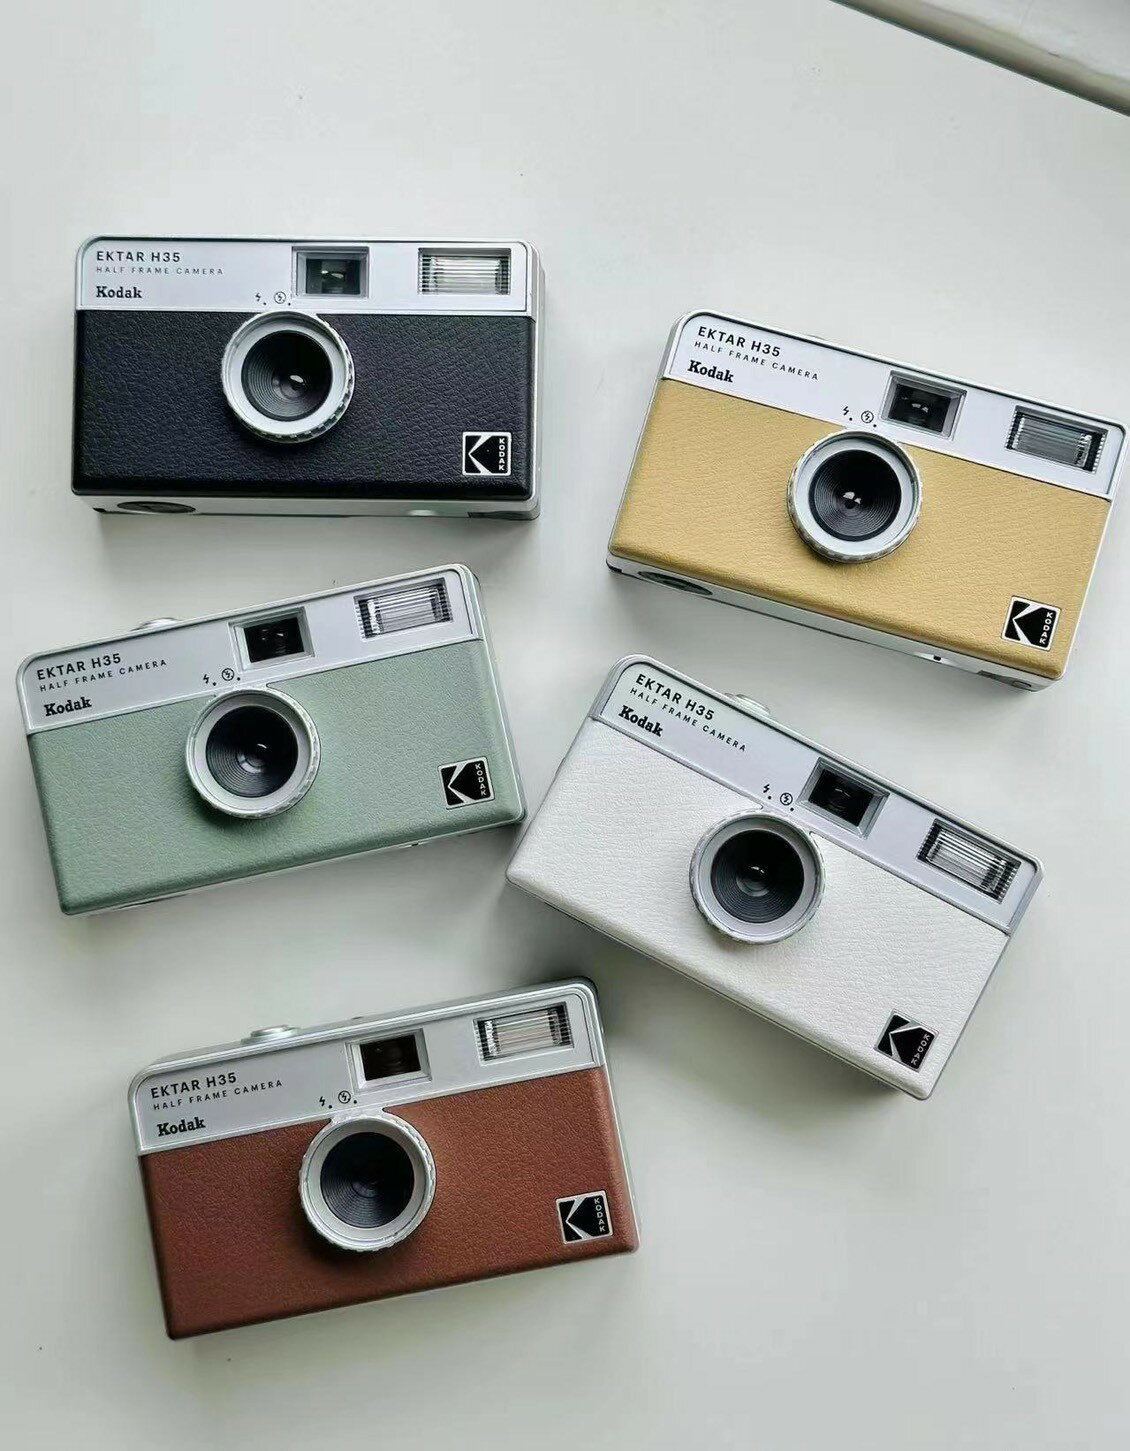 現貨馬上出 柯達 Kodak Ektar H35 半格菲林相機 底片相機 半格相機 LOMO 即可拍相機 內建閃光燈【全館滿額再折】【APP下單跨店最高再享22%點數】